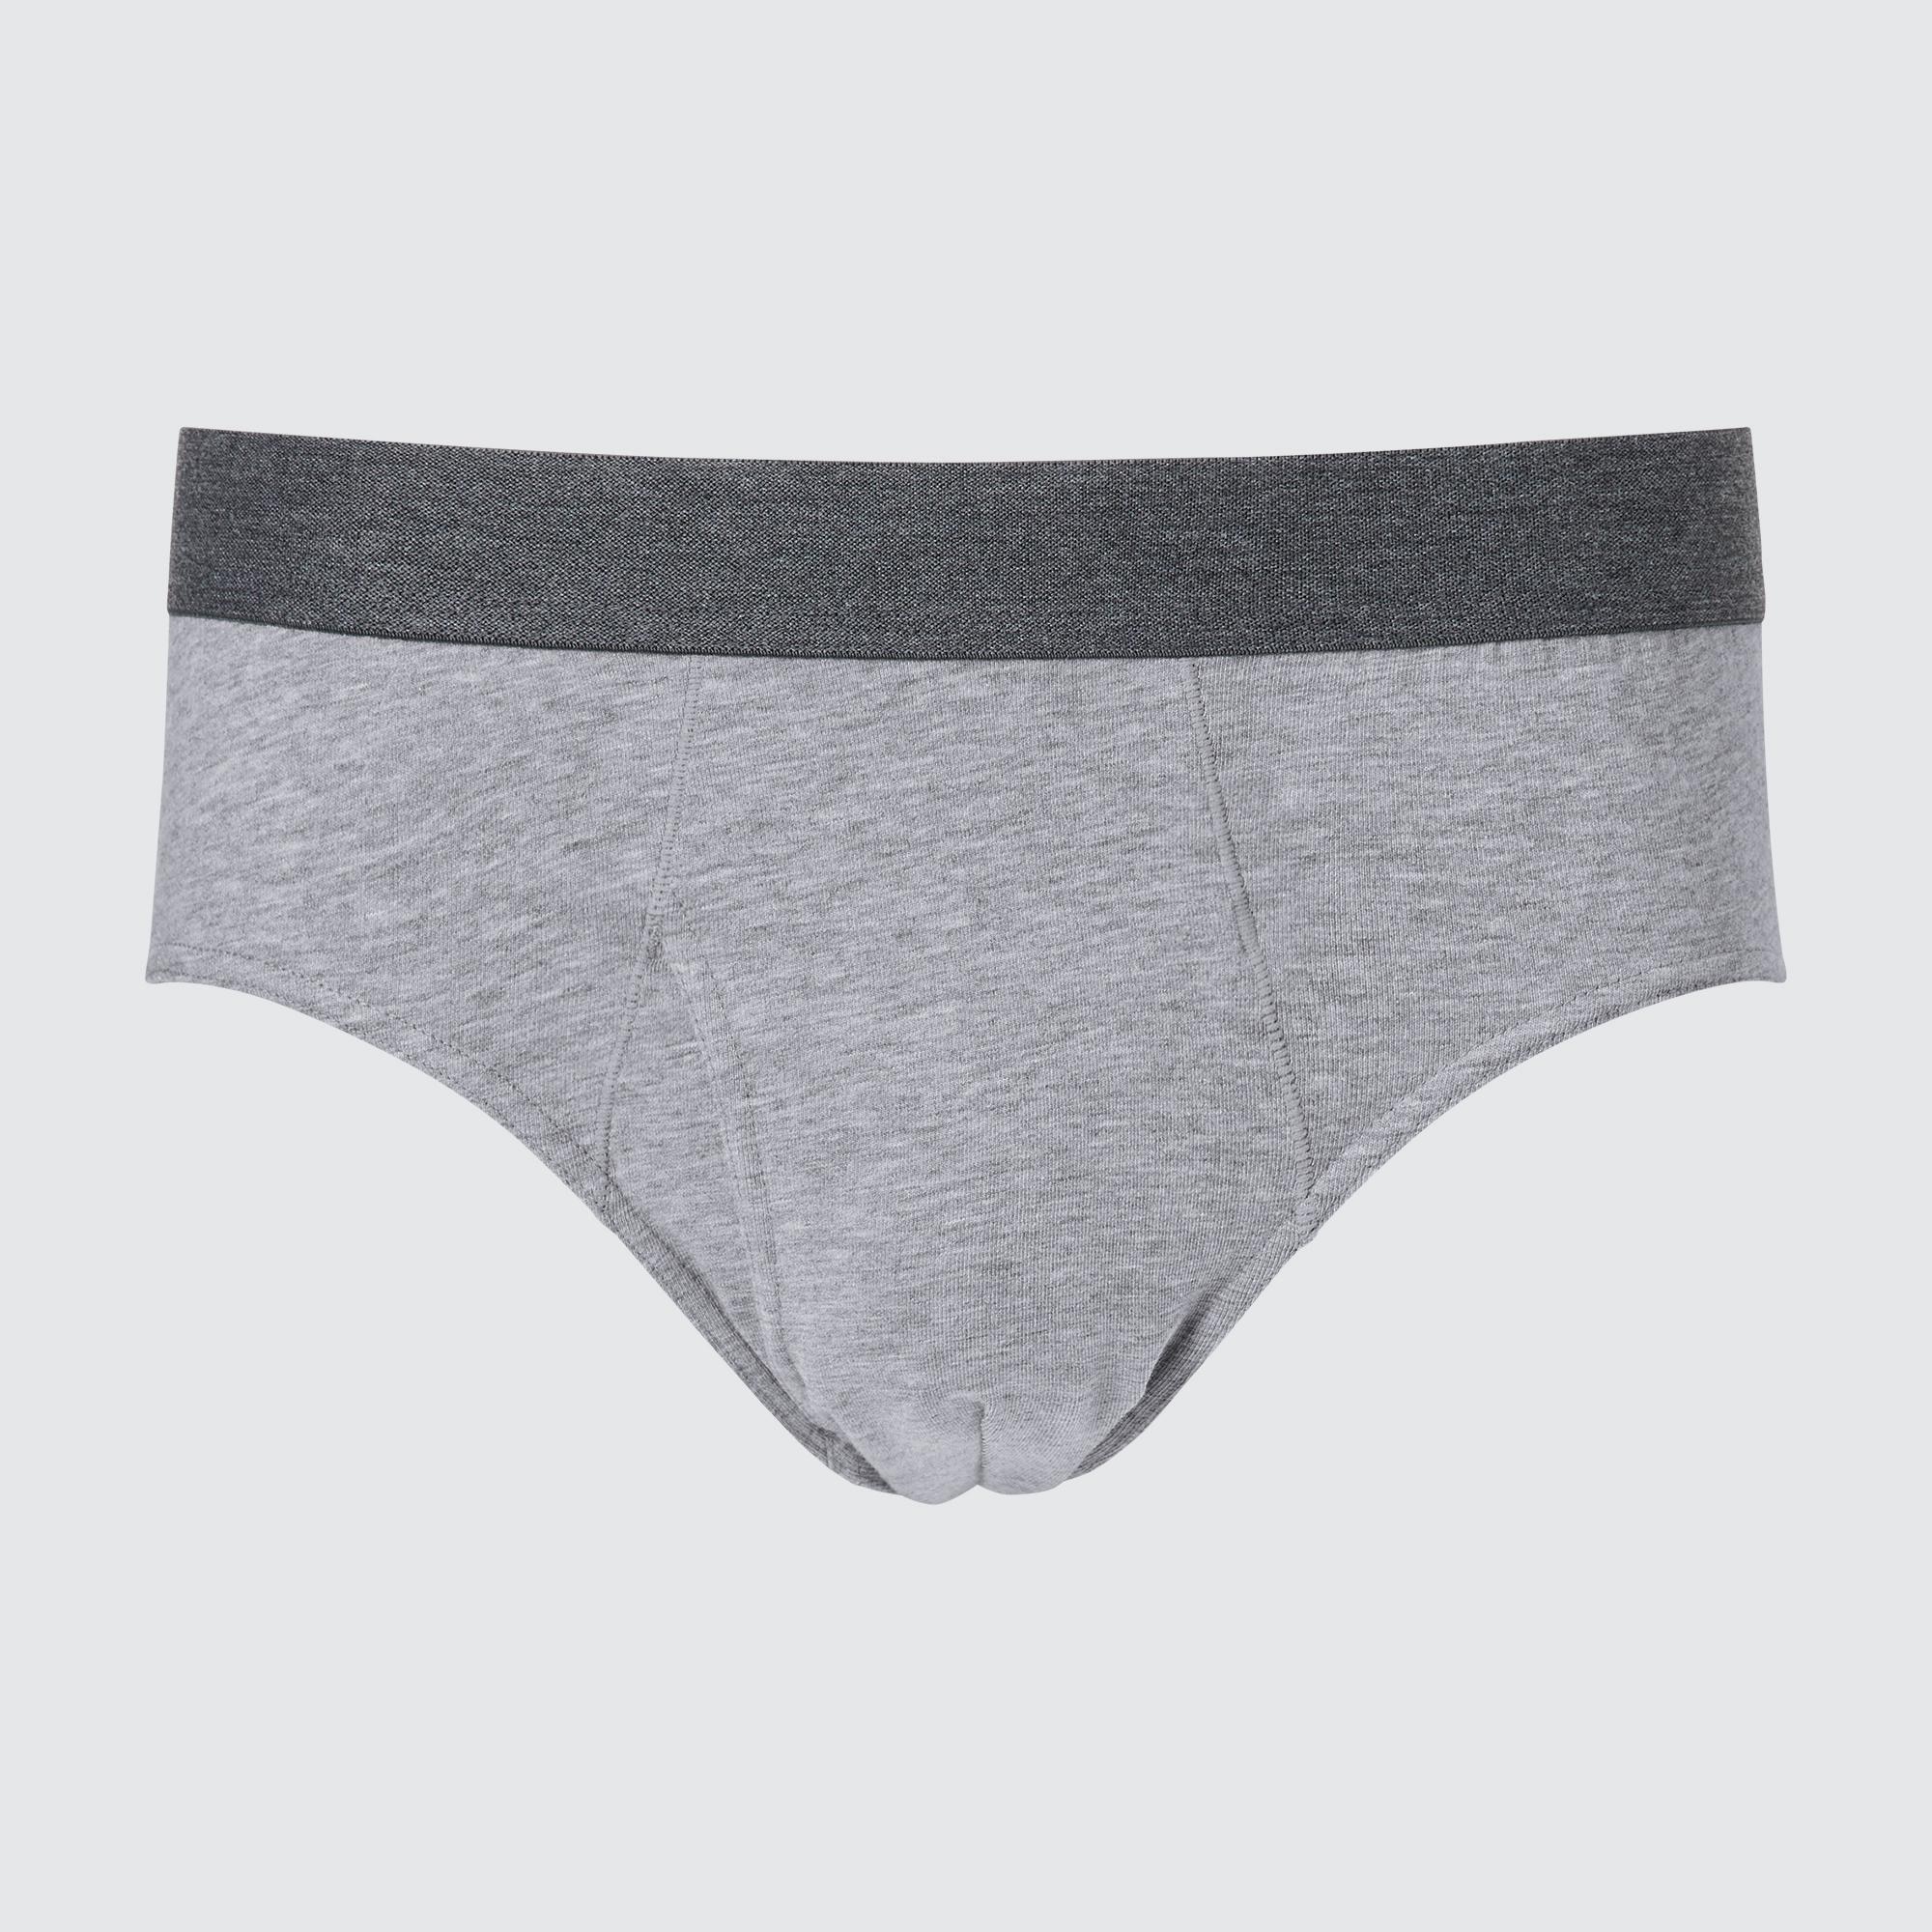  [mimiii] Uniqlo Underwear, Men's Threaded Panties